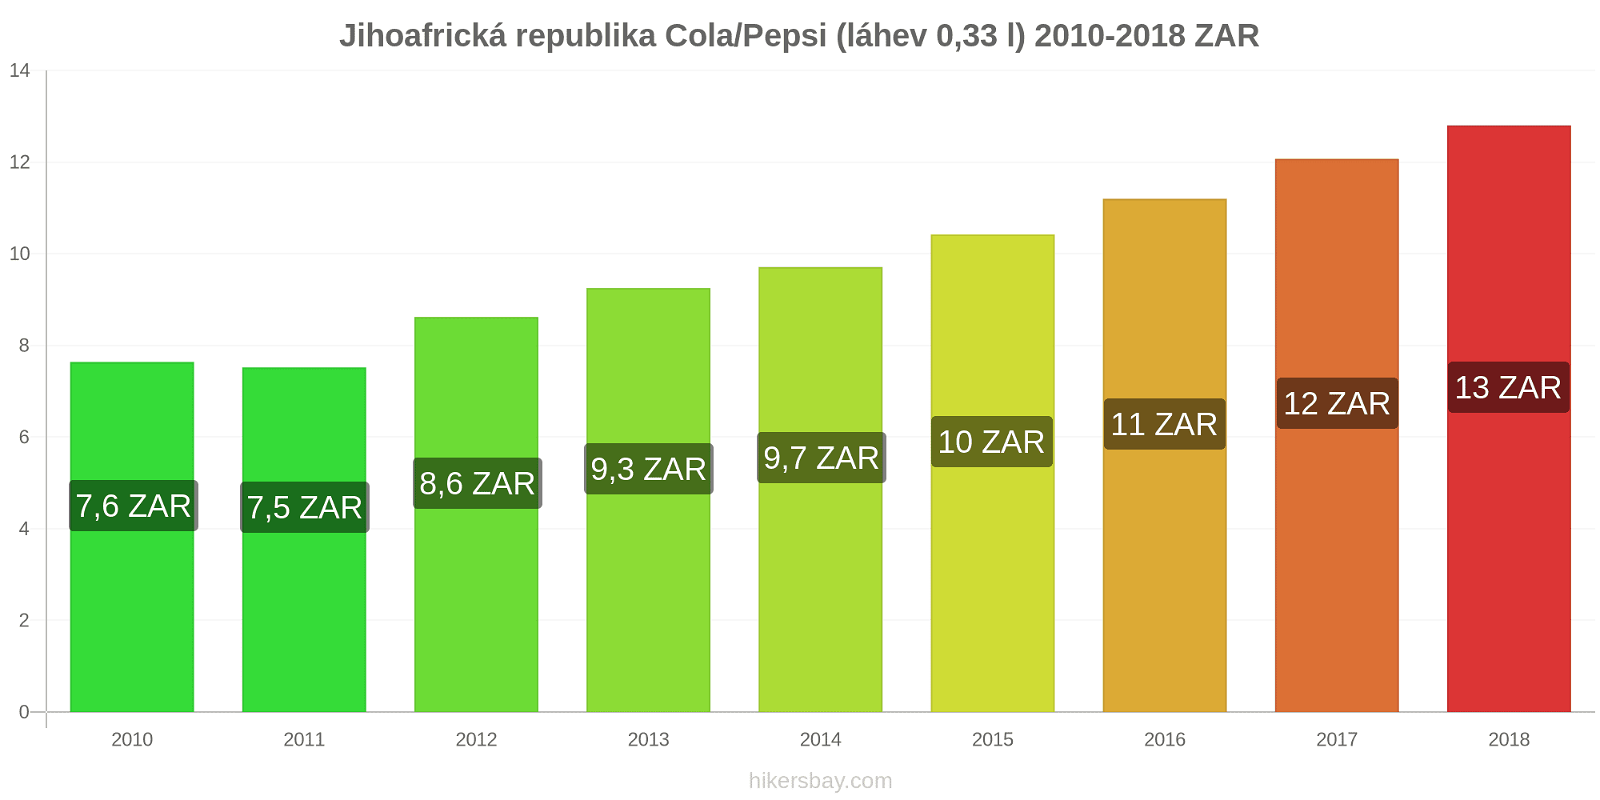 Jihoafrická republika změny cen Coca-Cola/Pepsi (láhev 0.33 l) hikersbay.com